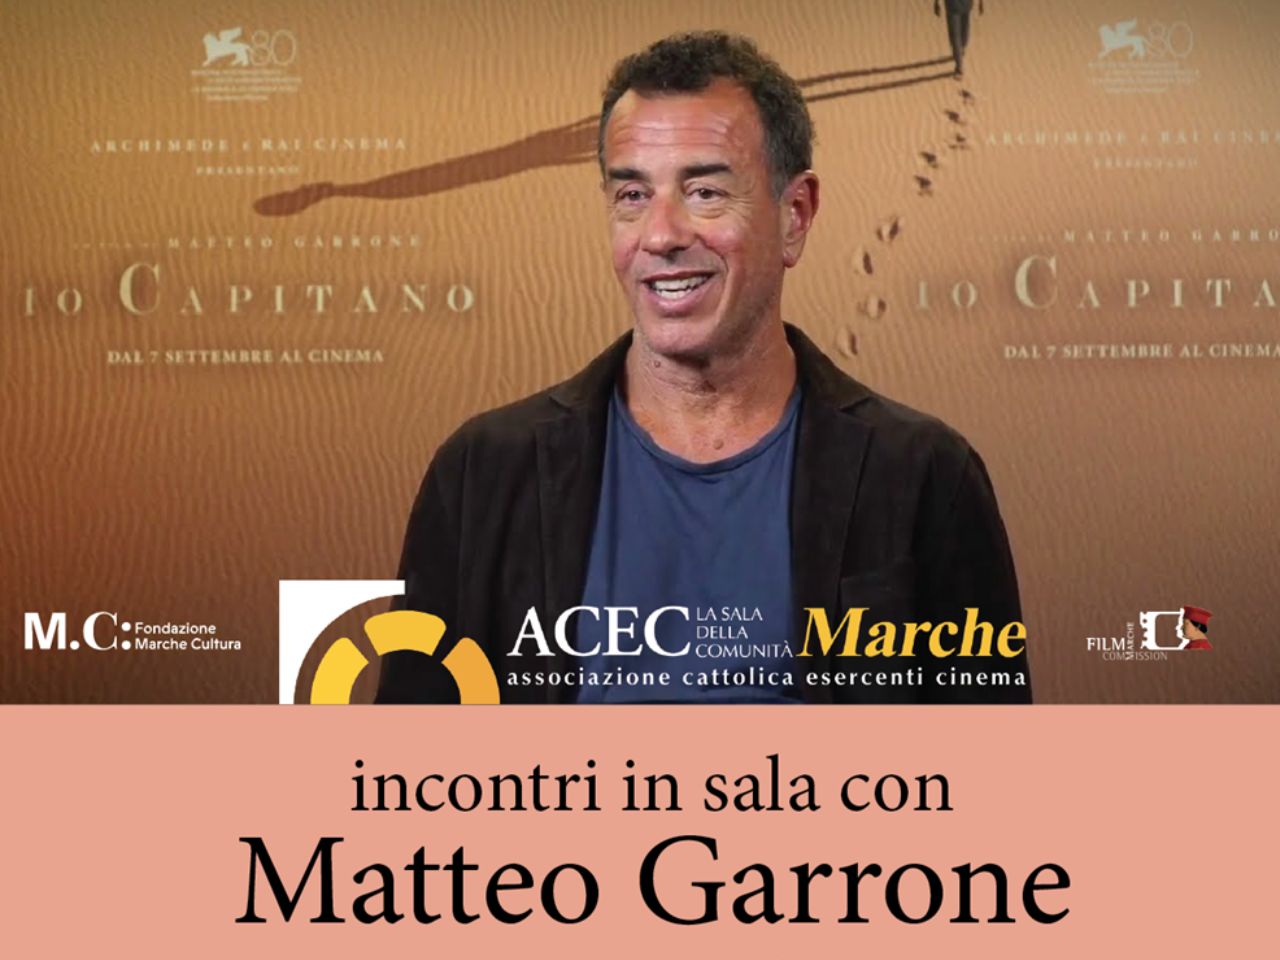 Il regista Matteo Garrone in tour nelle Marche a Pesaro, Fano e Senigallia